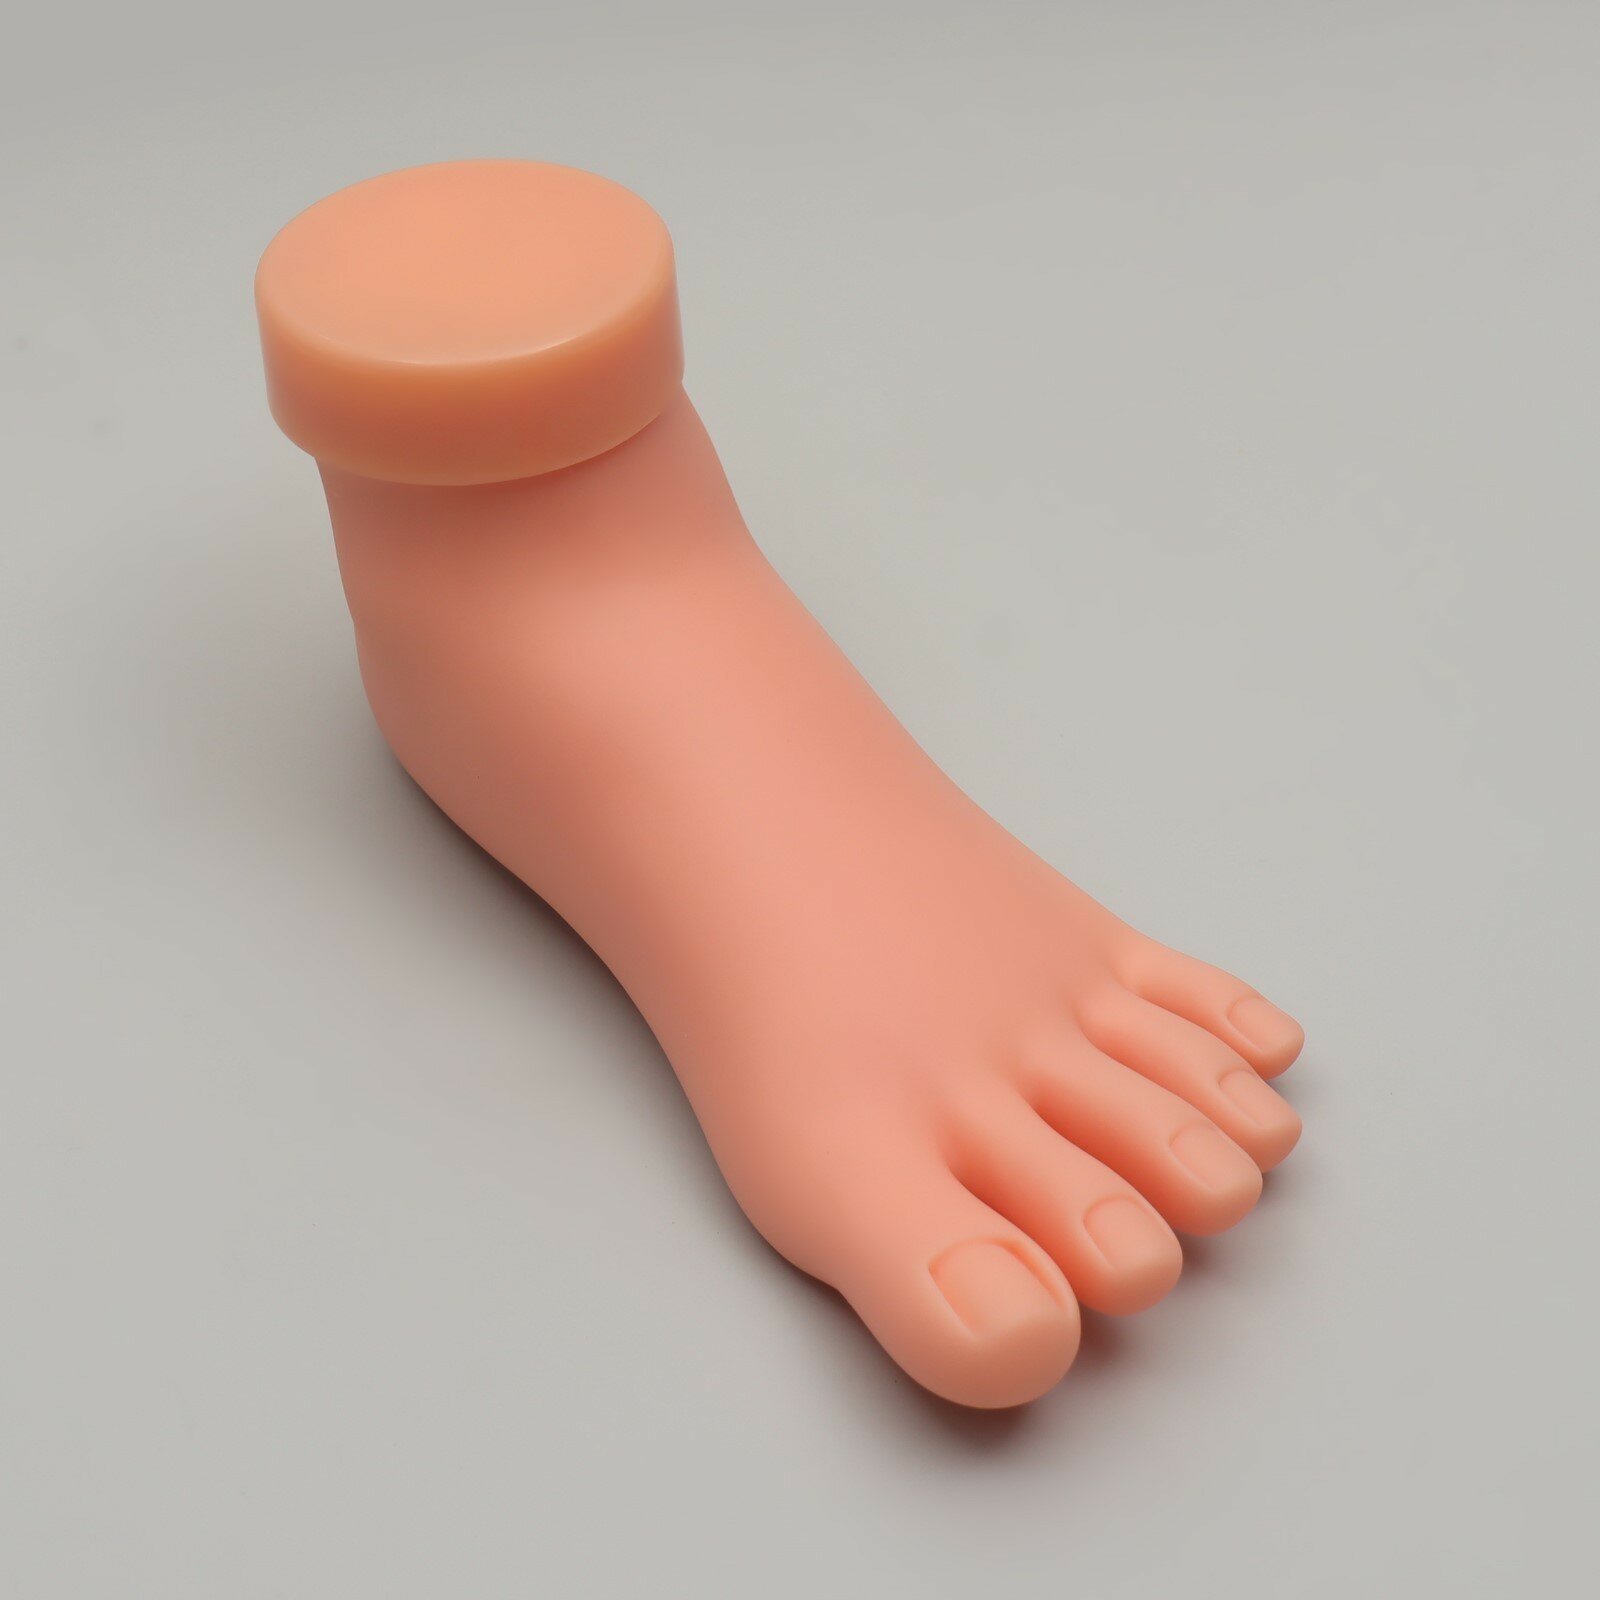 Нога тренировочная для педикюра, с гнущимися пальцами, цвет бежевый (1шт.)